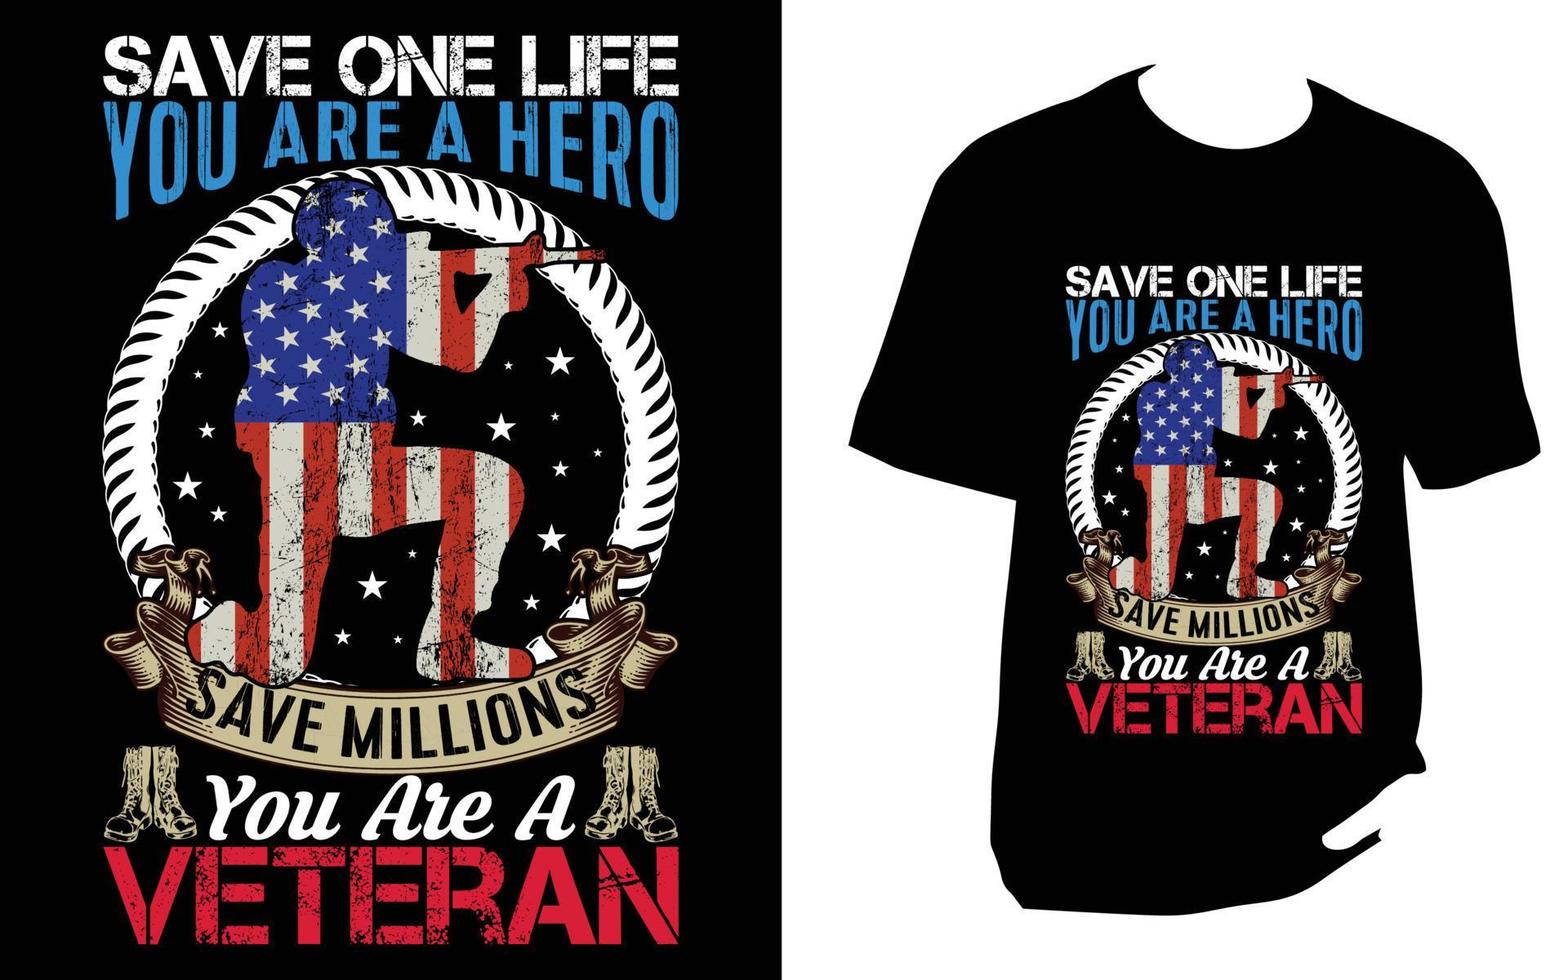 Veteranen-T-Shirt-Design vektor